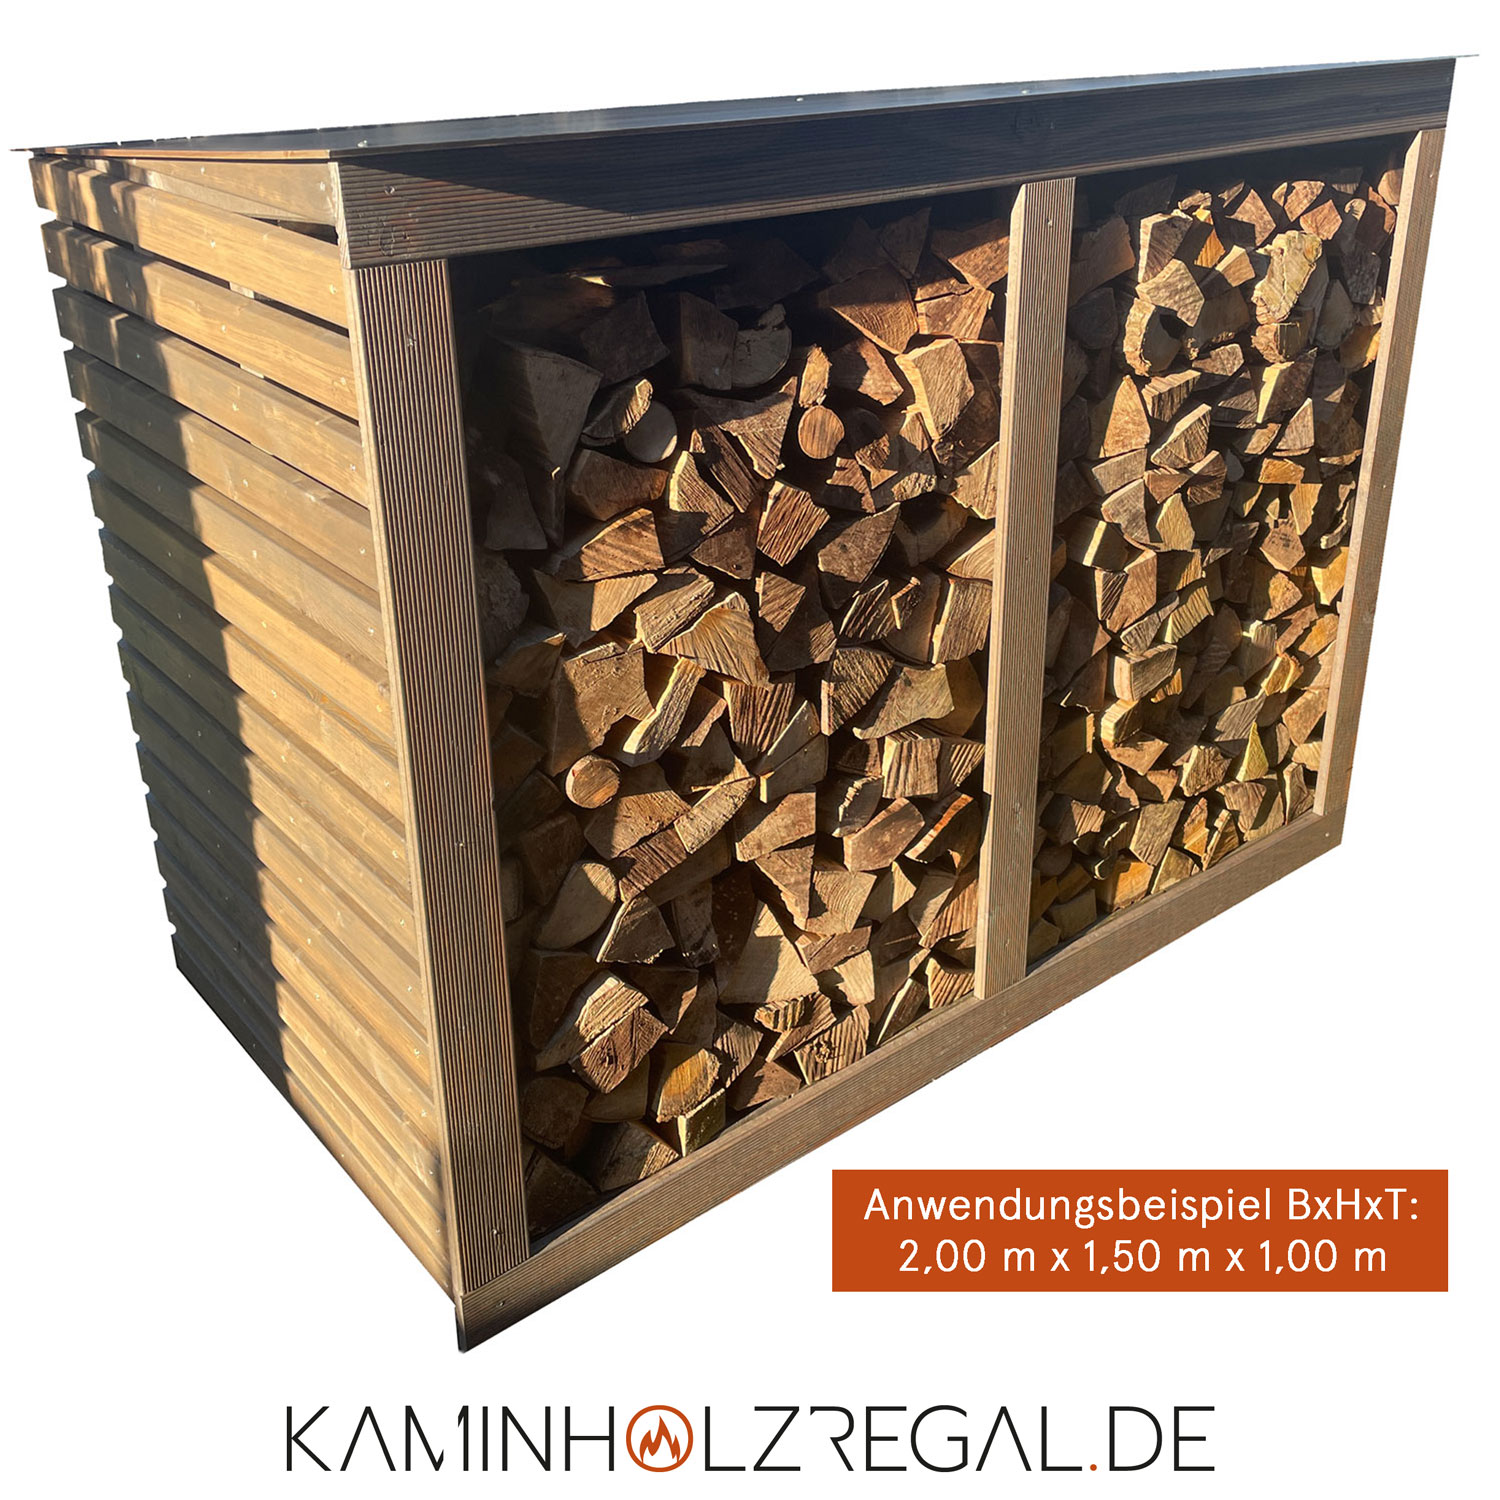 Premium Kaminholzregal - Rhombus Seitenverkleidung, HPL Dachplatte und Rückwand - graphitgrau/anthrazit